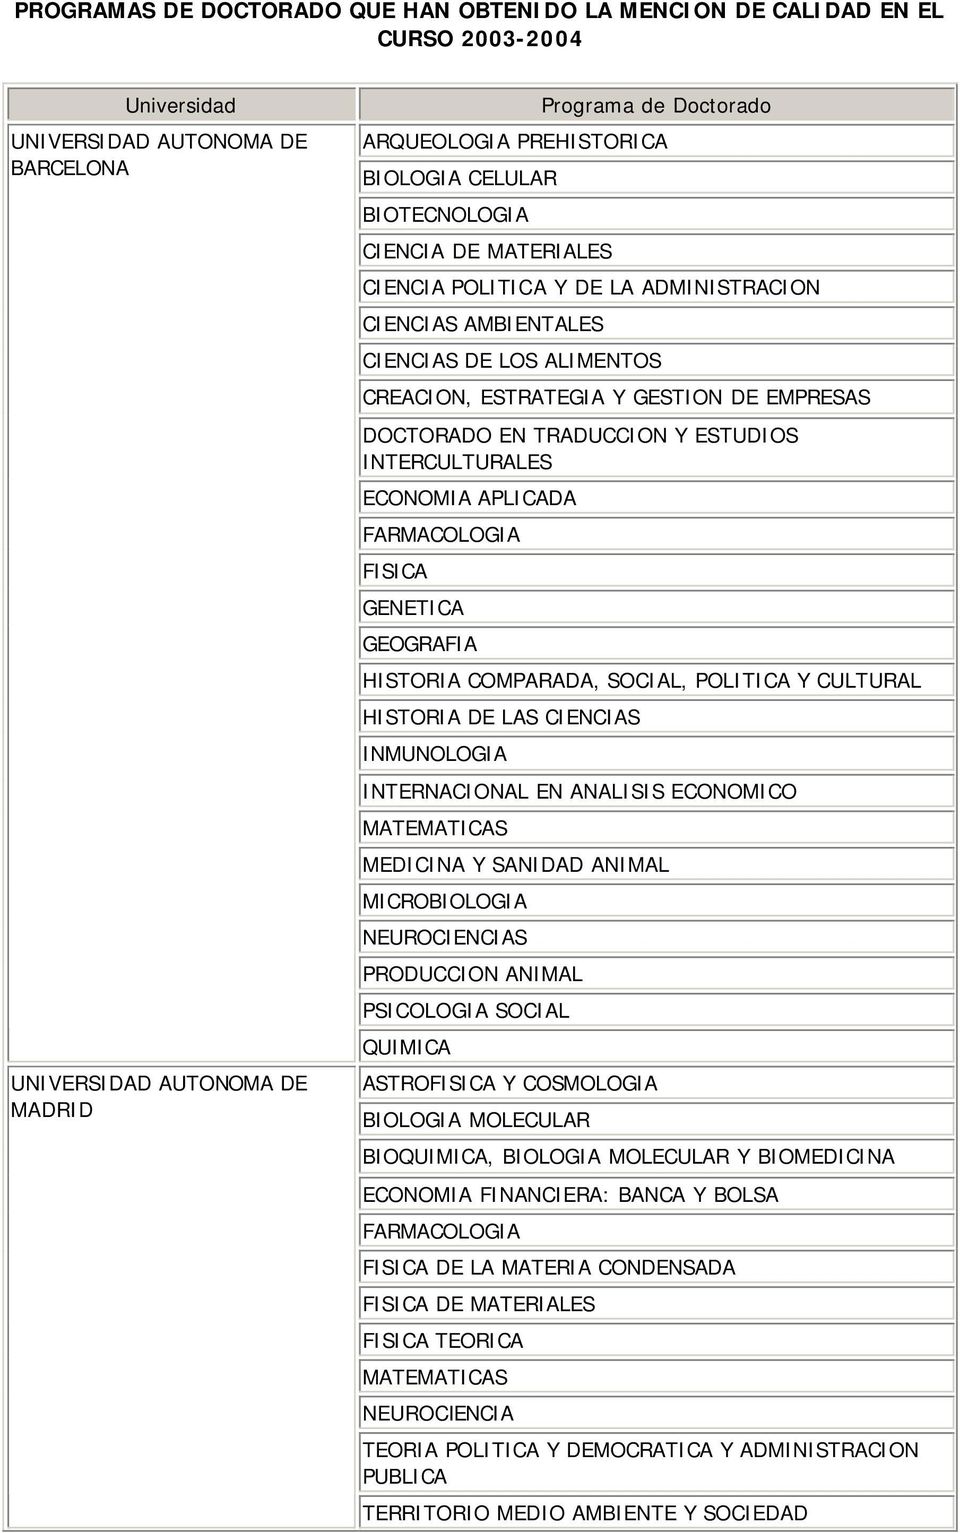 ESTUDIOS INTERCULTURALES ECONOMIA APLICADA FARMACOLOGIA FISICA GENETICA GEOGRAFIA HISTORIA COMPARADA, SOCIAL, POLITICA Y CULTURAL HISTORIA DE LAS CIENCIAS INMUNOLOGIA INTERNACIONAL EN ANALISIS